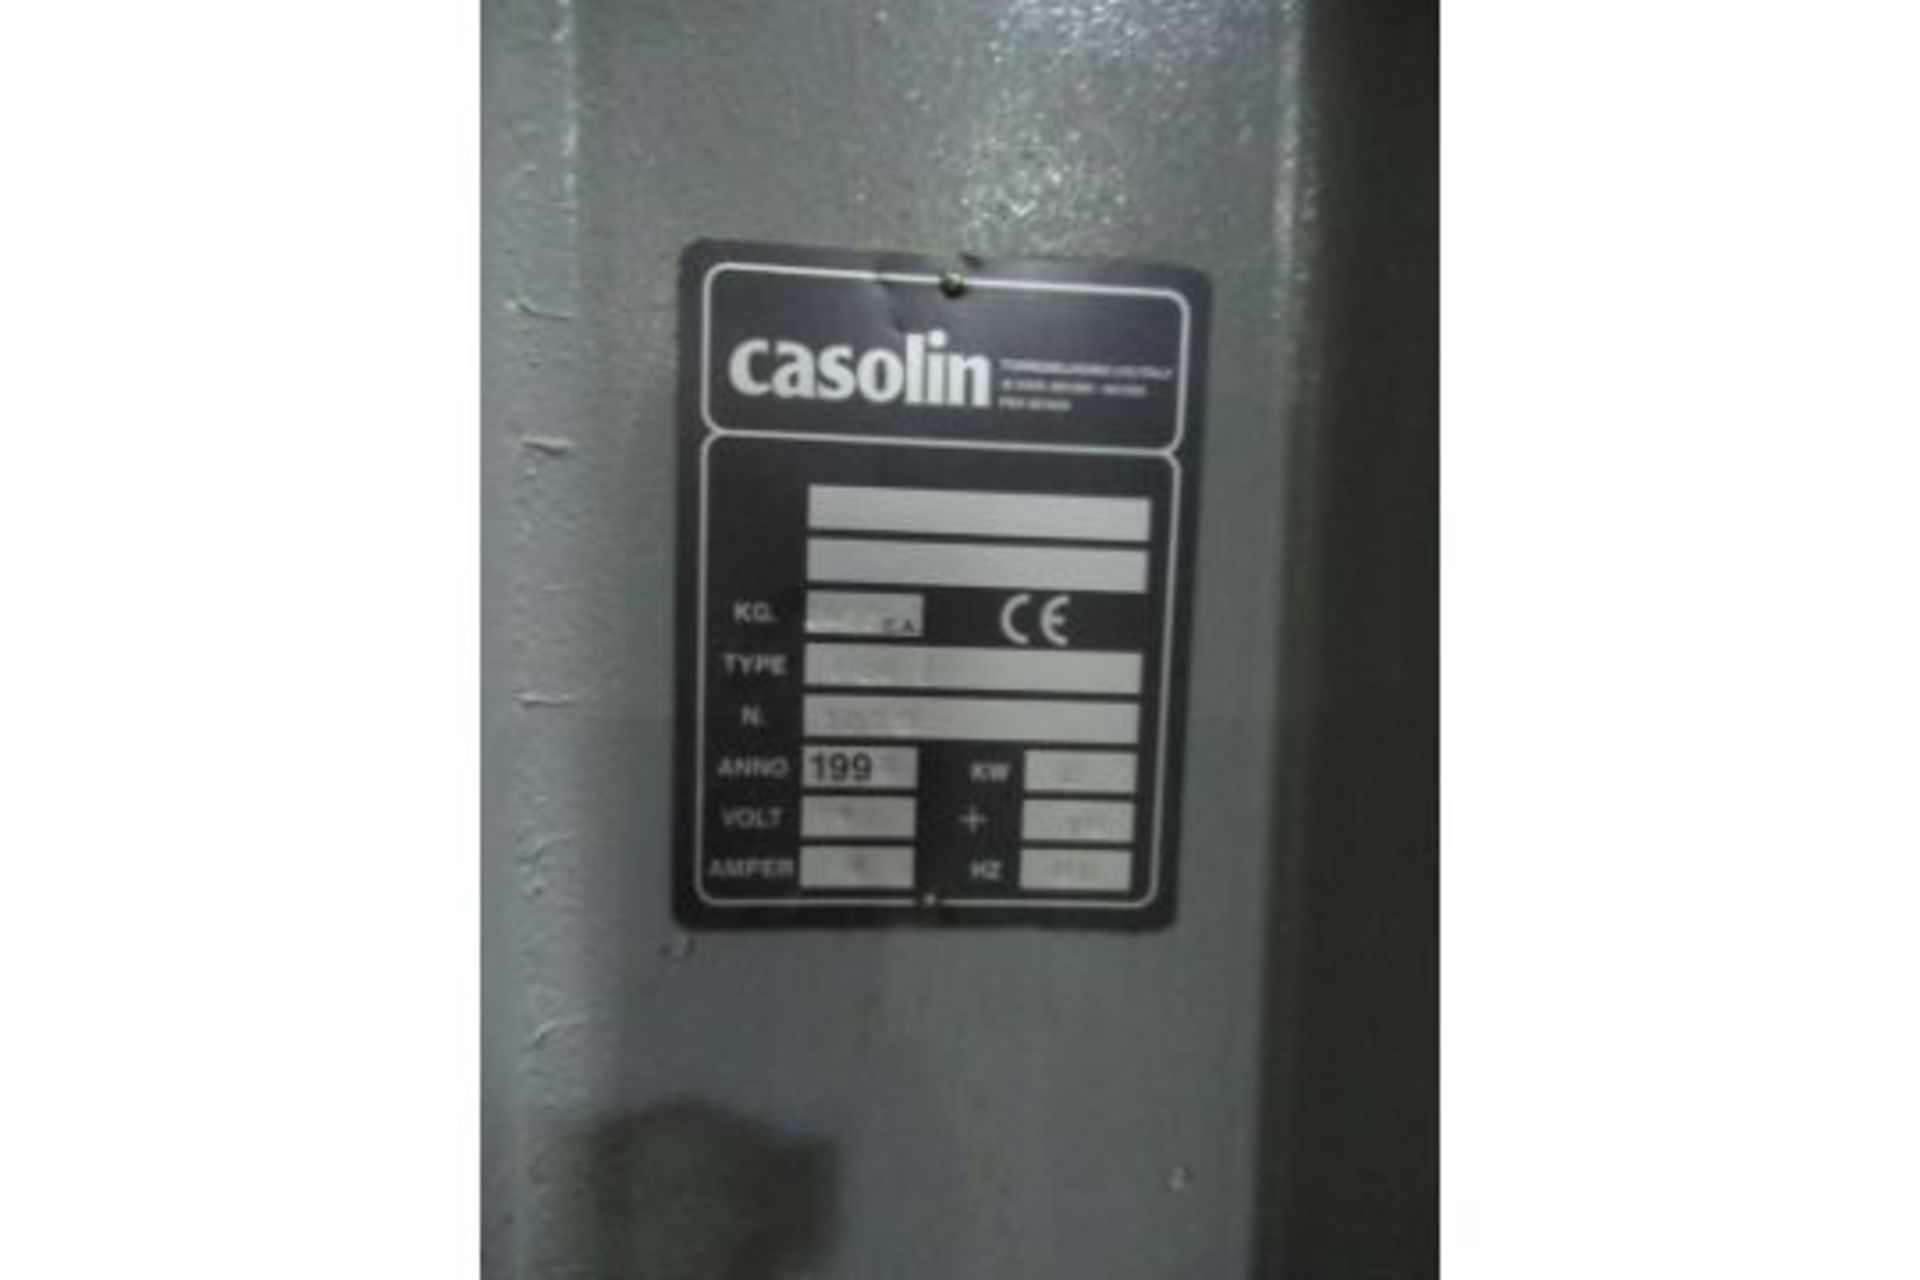 Casolin cold press T6O F - Image 4 of 7